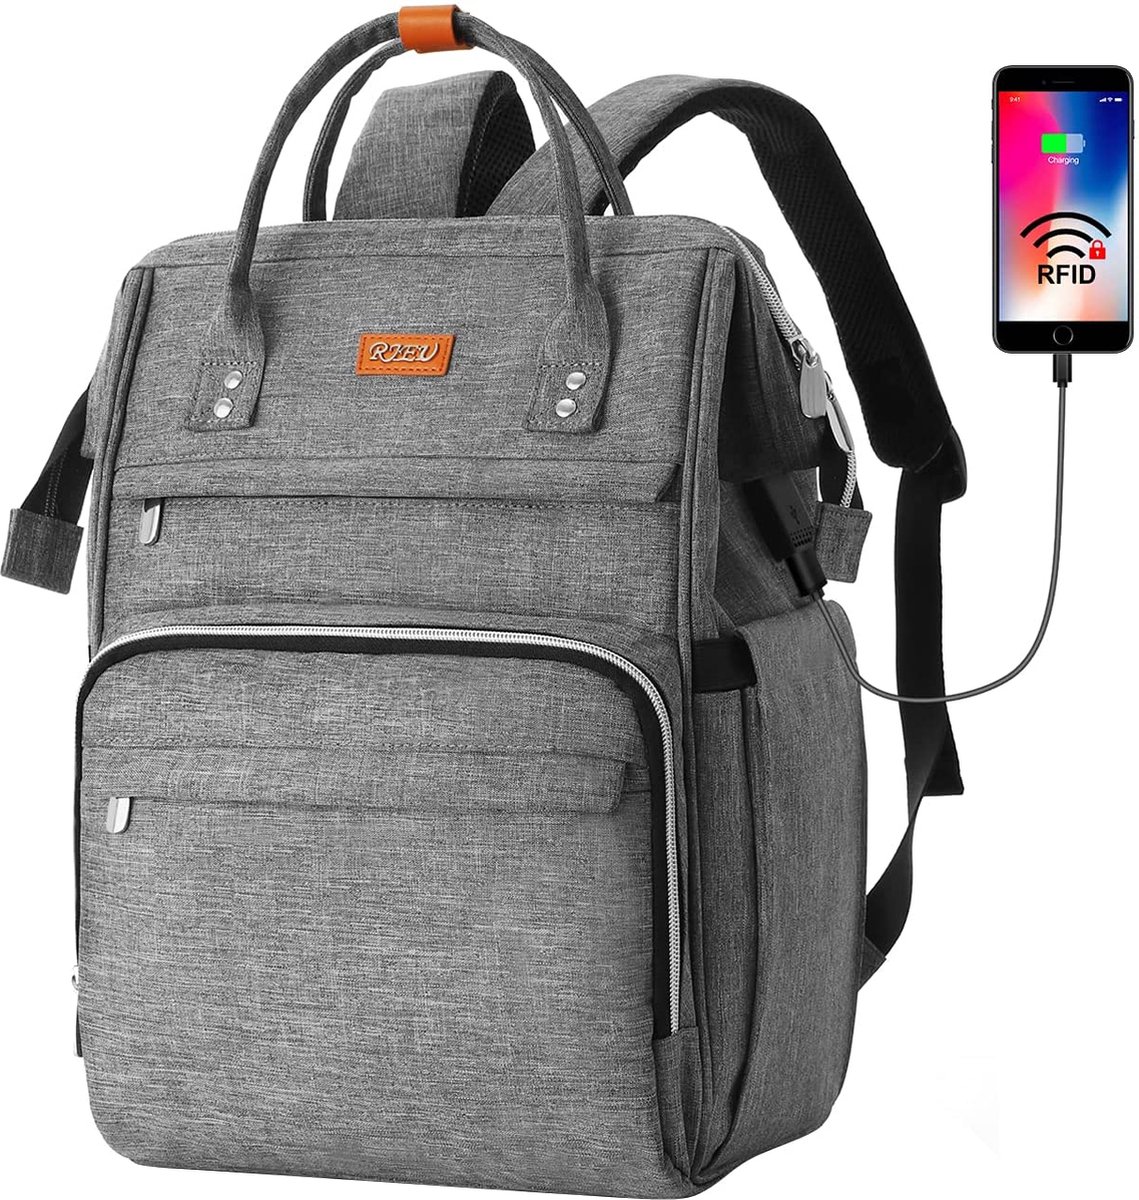 Rugzak voor dames met RFID-tas, laptoprugzak voor 15,6-inch laptop, waterdicht en anti-diefstal, dagrugzak voor reizen, zaken, werk, schoolrugzak voor tienermeisjes (grijs)